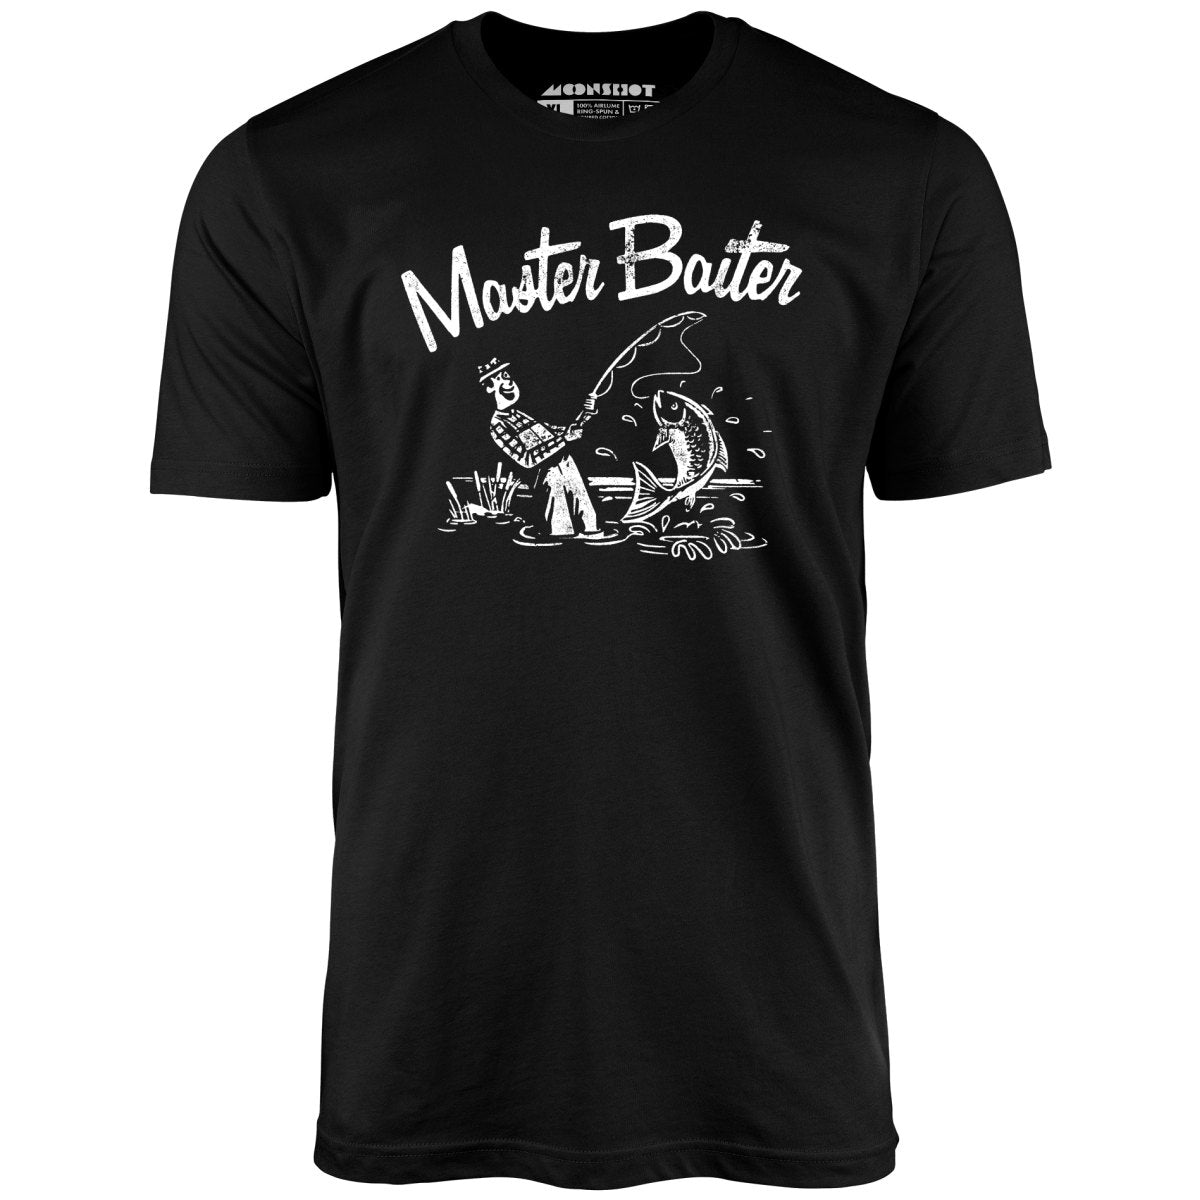 Master Baiter - Unisex T-Shirt